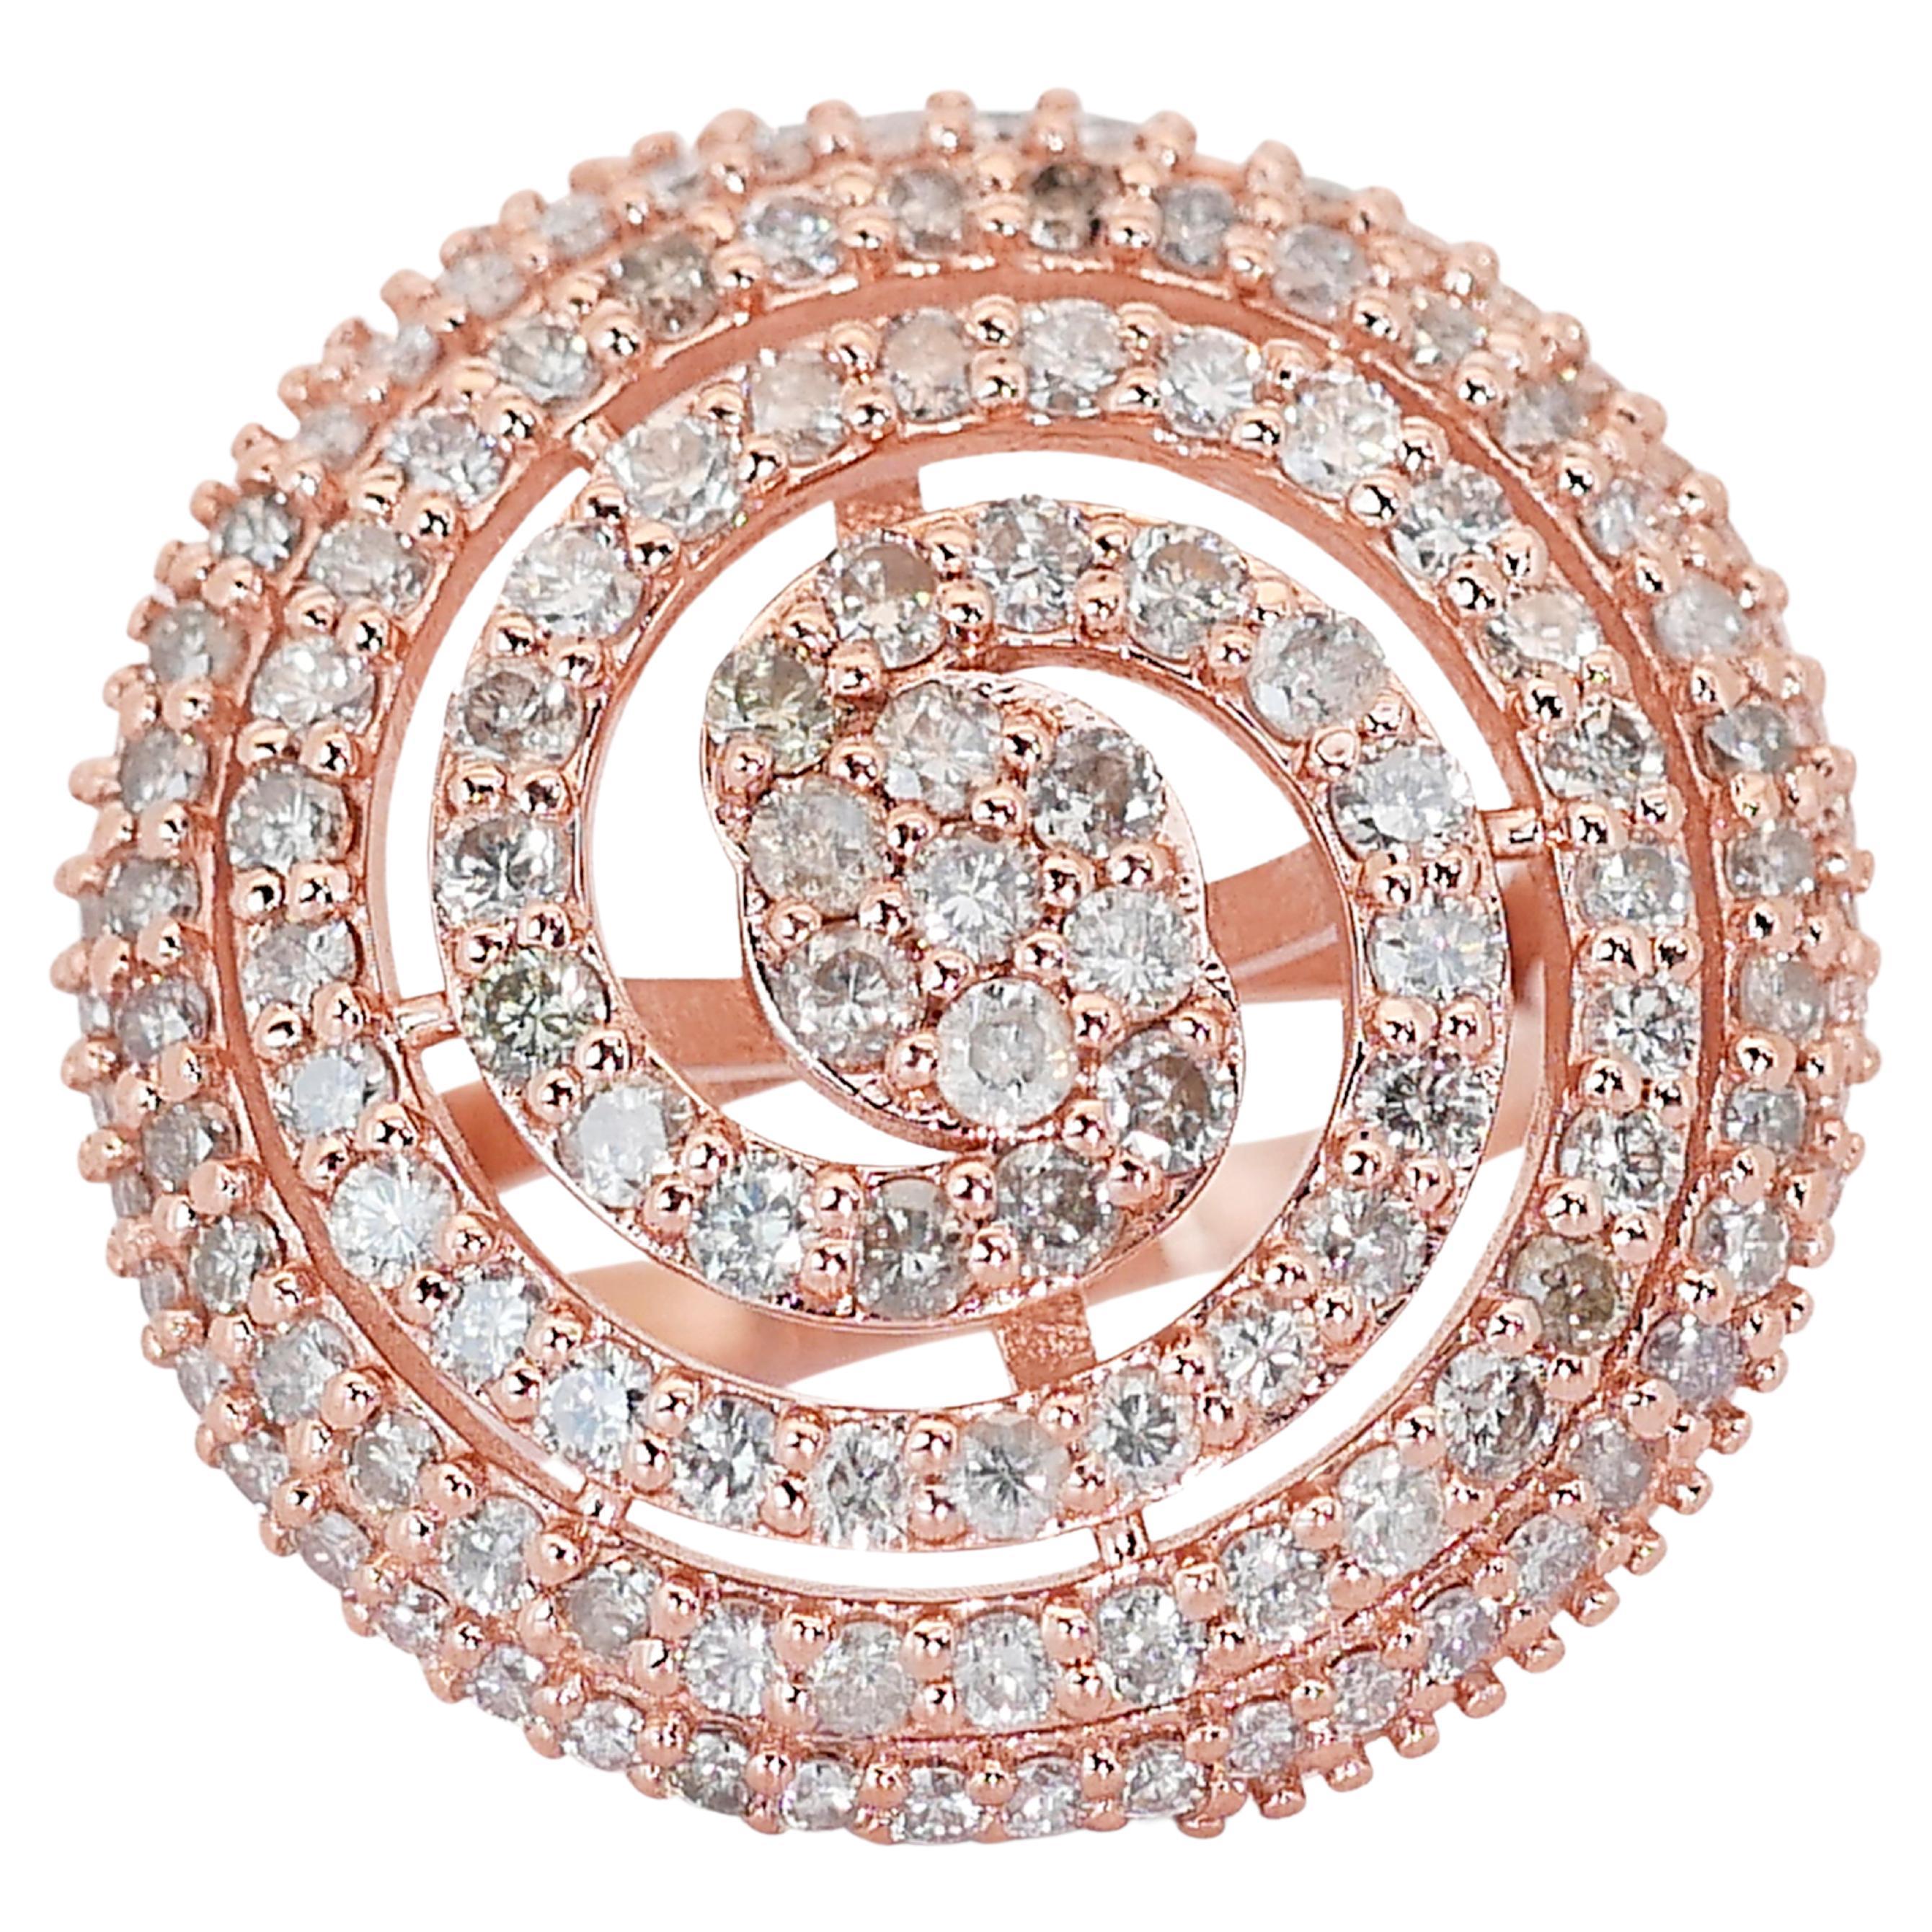 Glamorous 2.46ct Diamonds Cluster Ring in 14k Rose Gold - IGI Certified